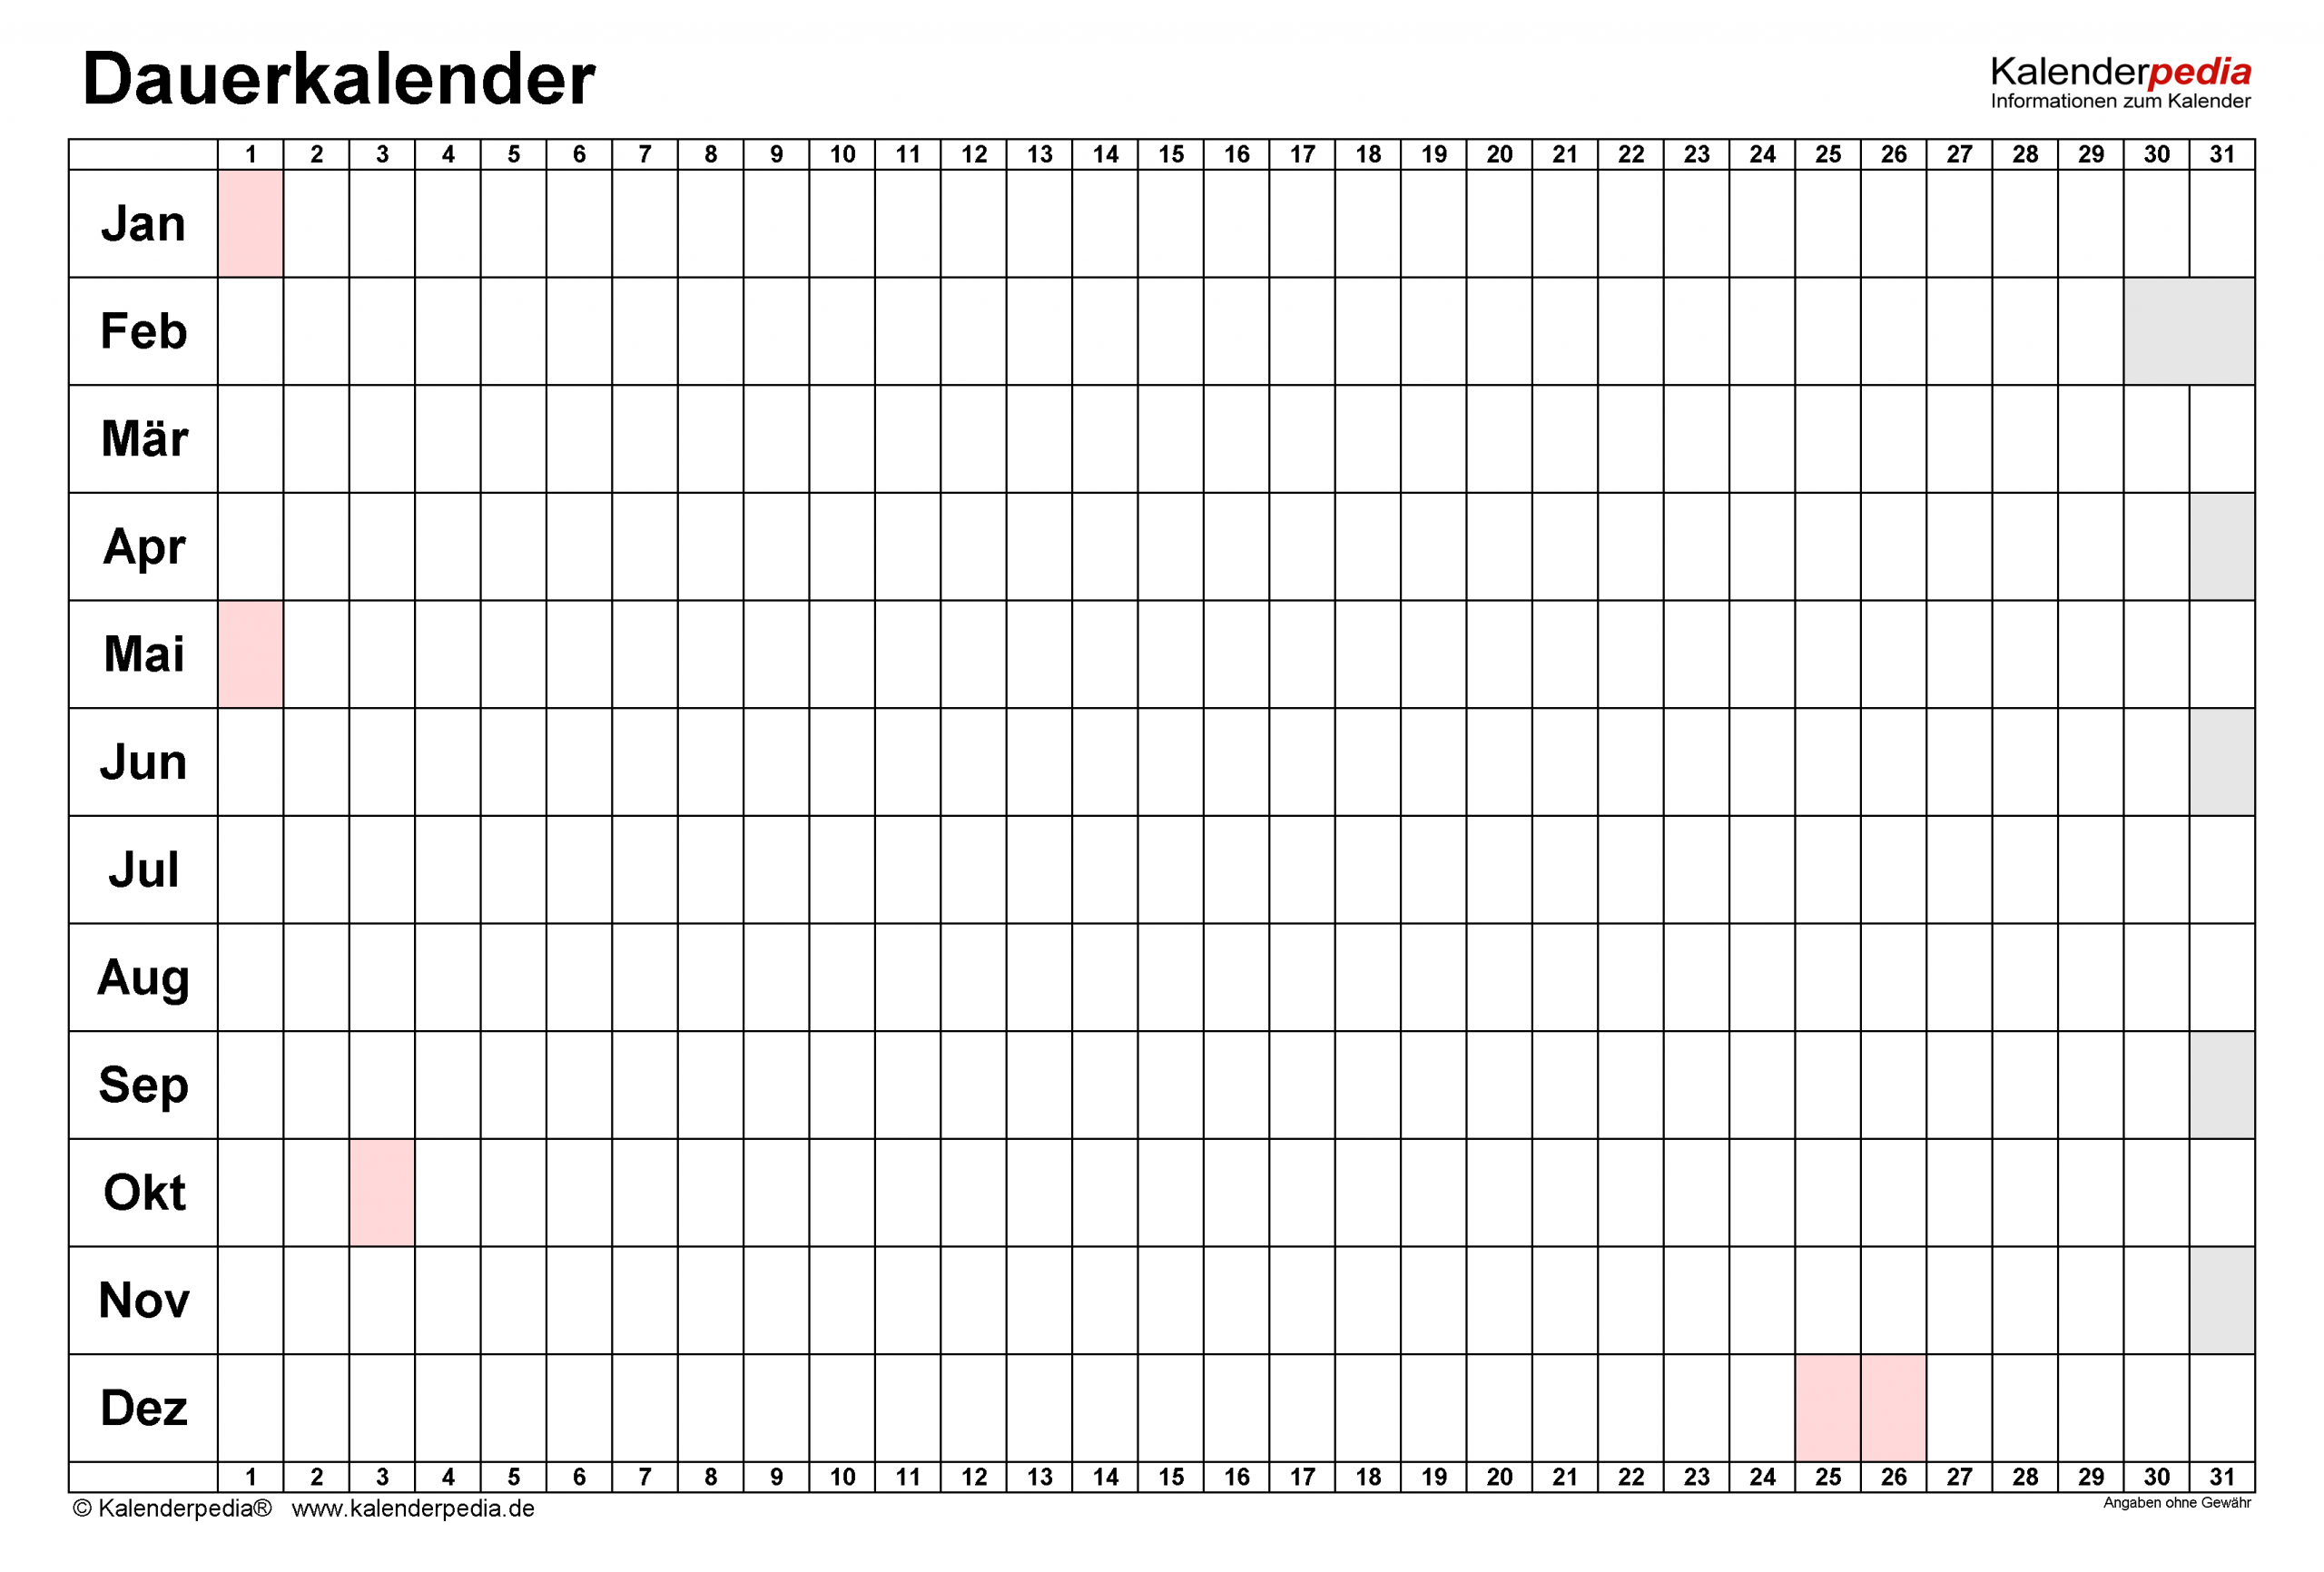 Dauerkalender / Immerwährender Kalender Für Excel Zum Ausdrucken mit Kalender Für Jedes Jahr